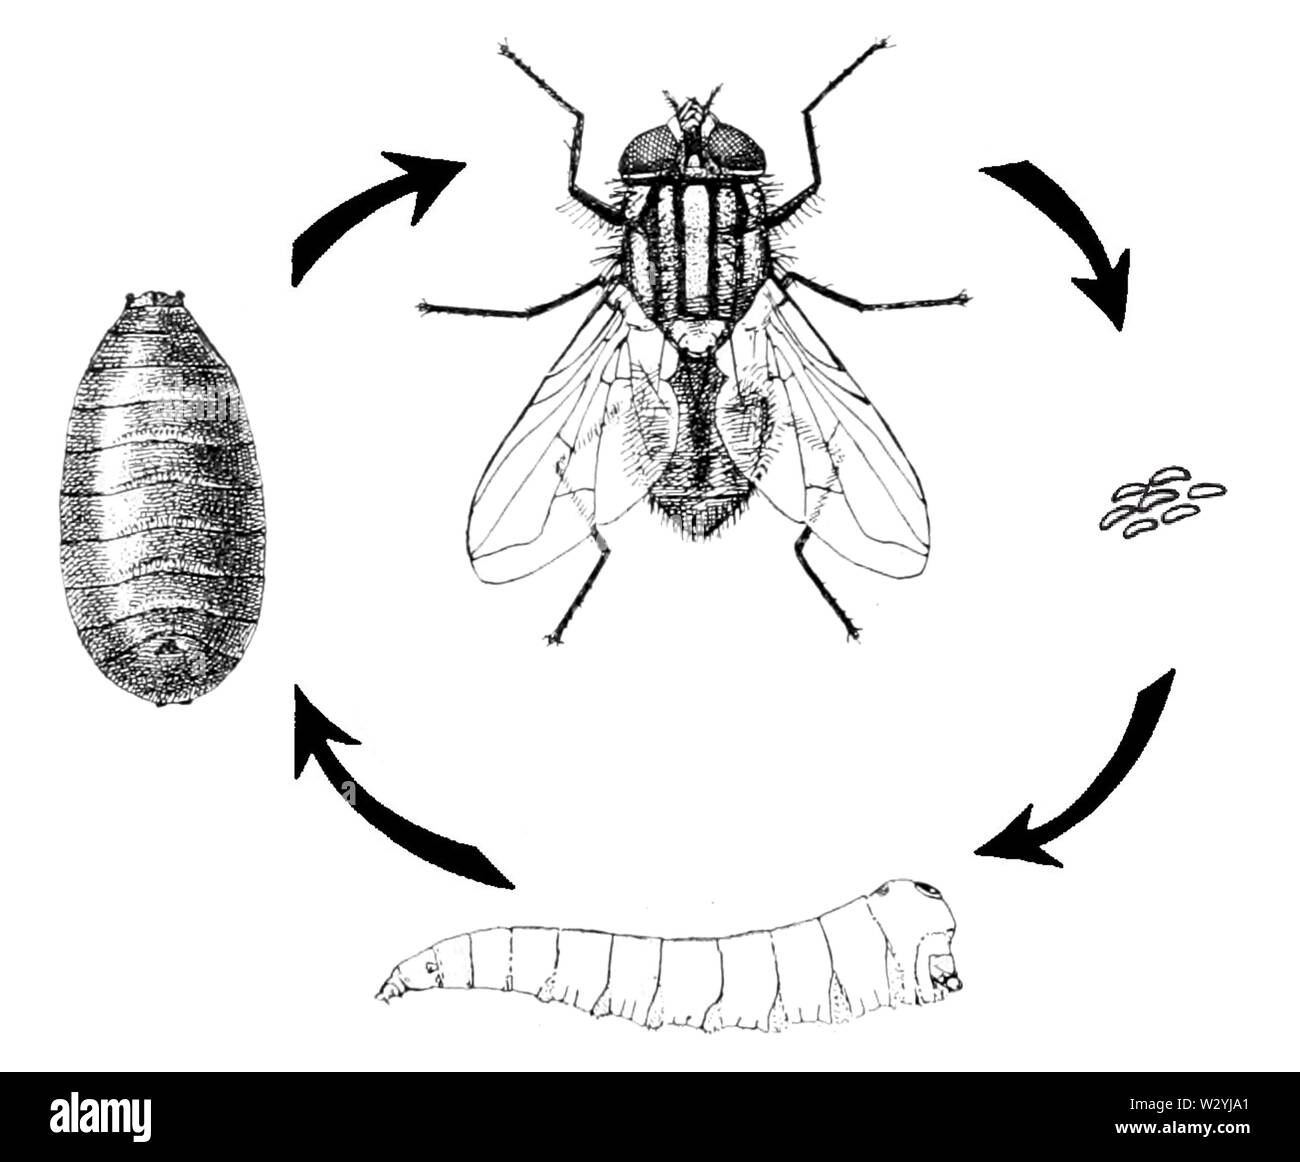 Развитие мясной мухи. Musca domestica жизненный цикл. Цикл развития комнатной мухи. Musca domestica комнатная Муха. Осенняя жигалка жизненный цикл.